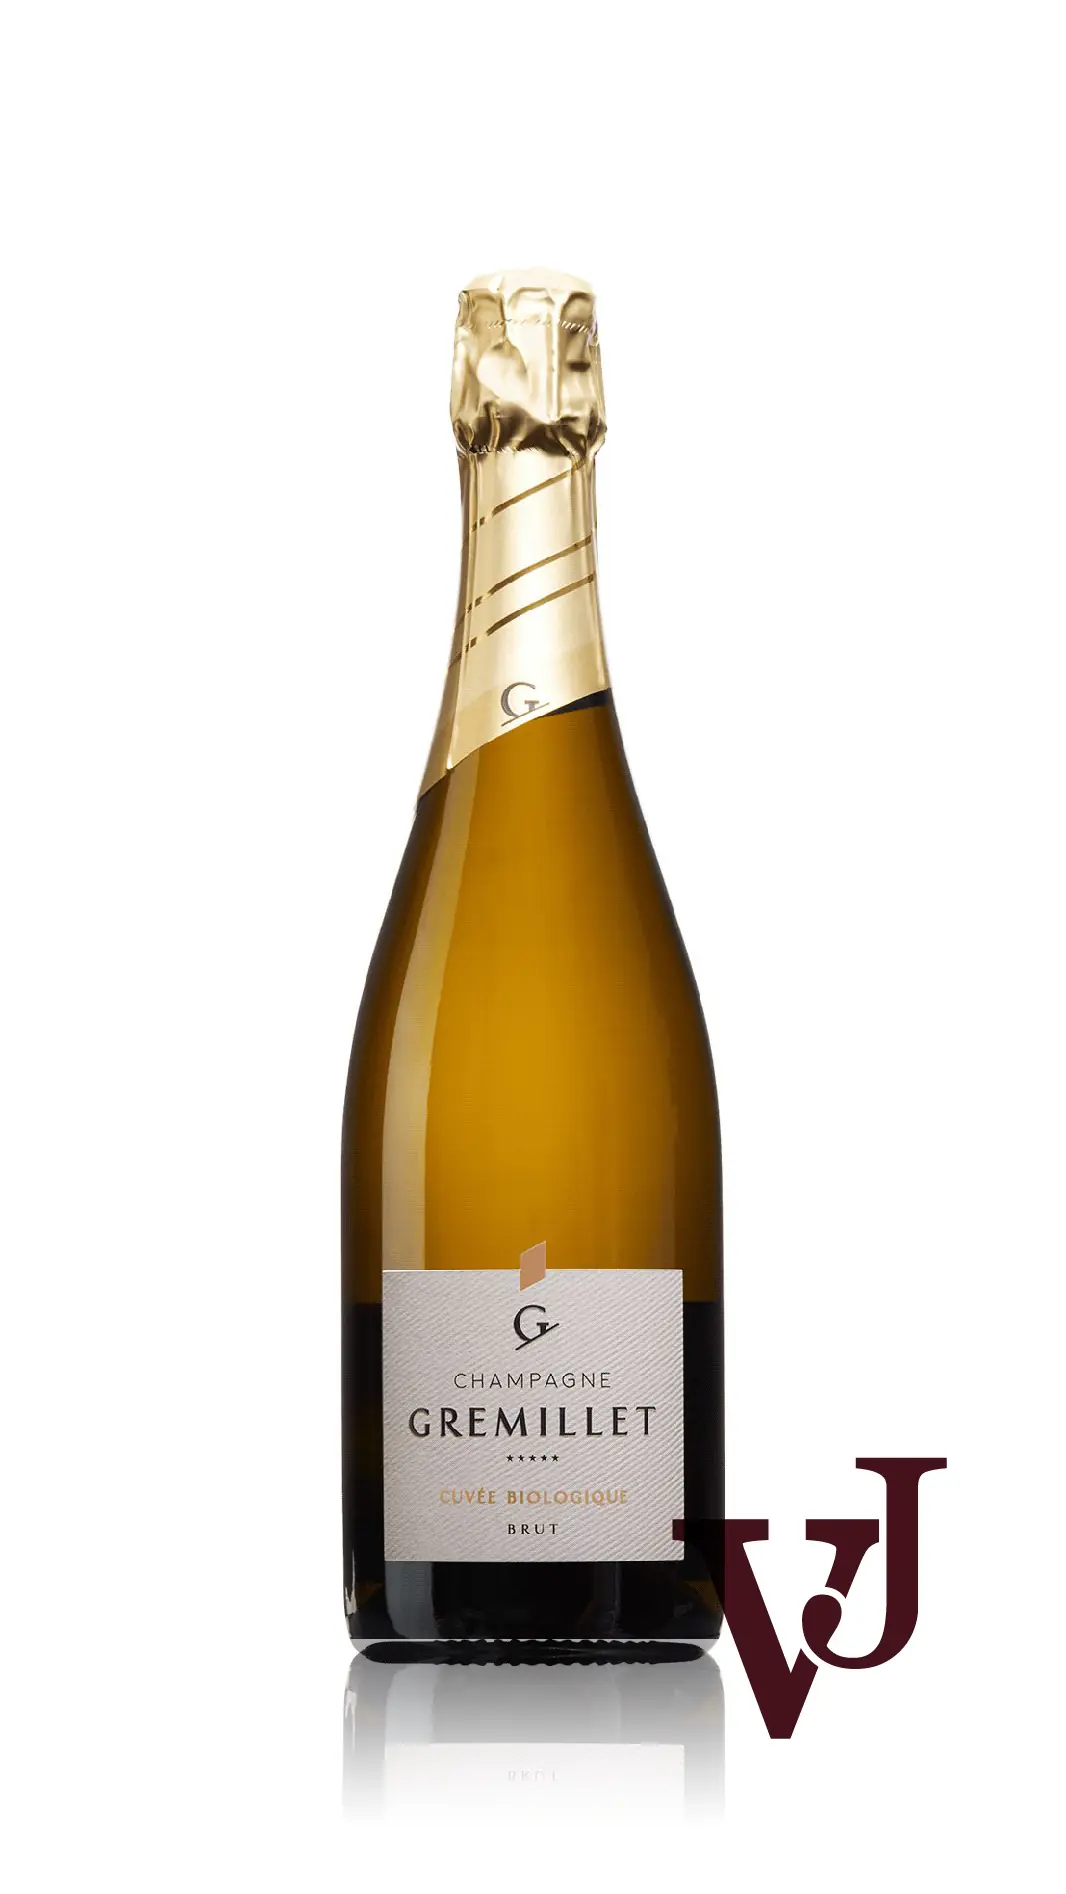 Mousserande Vin - Gremillet Cuvée Biologique Brut artikel nummer 7589101 från producenten Champagne J-M Gremillet från området Frankrike - Vinjournalen.se